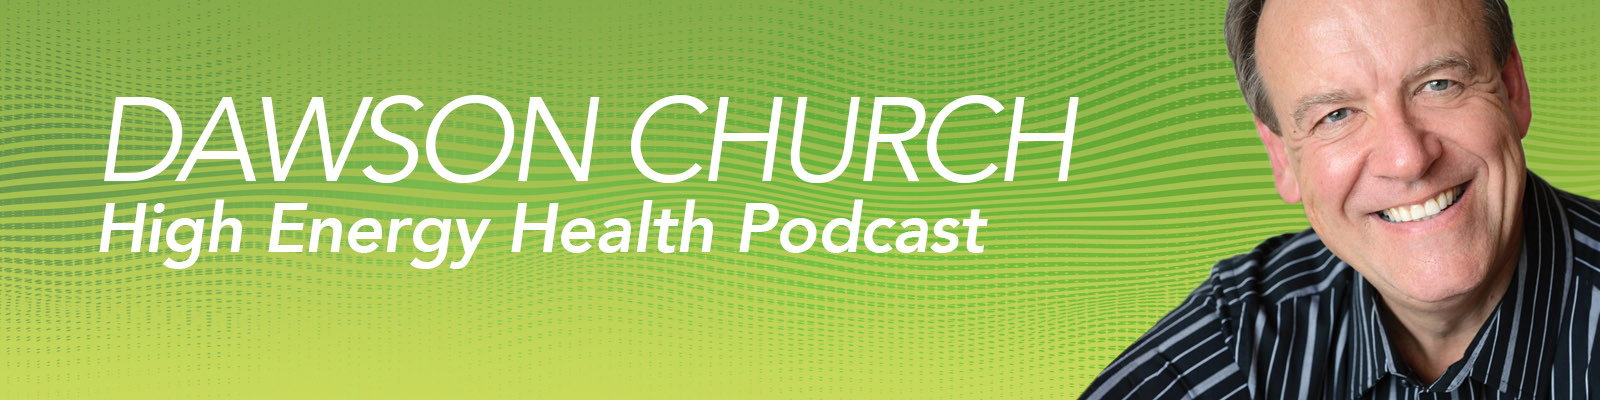 High Energy Health Podcast